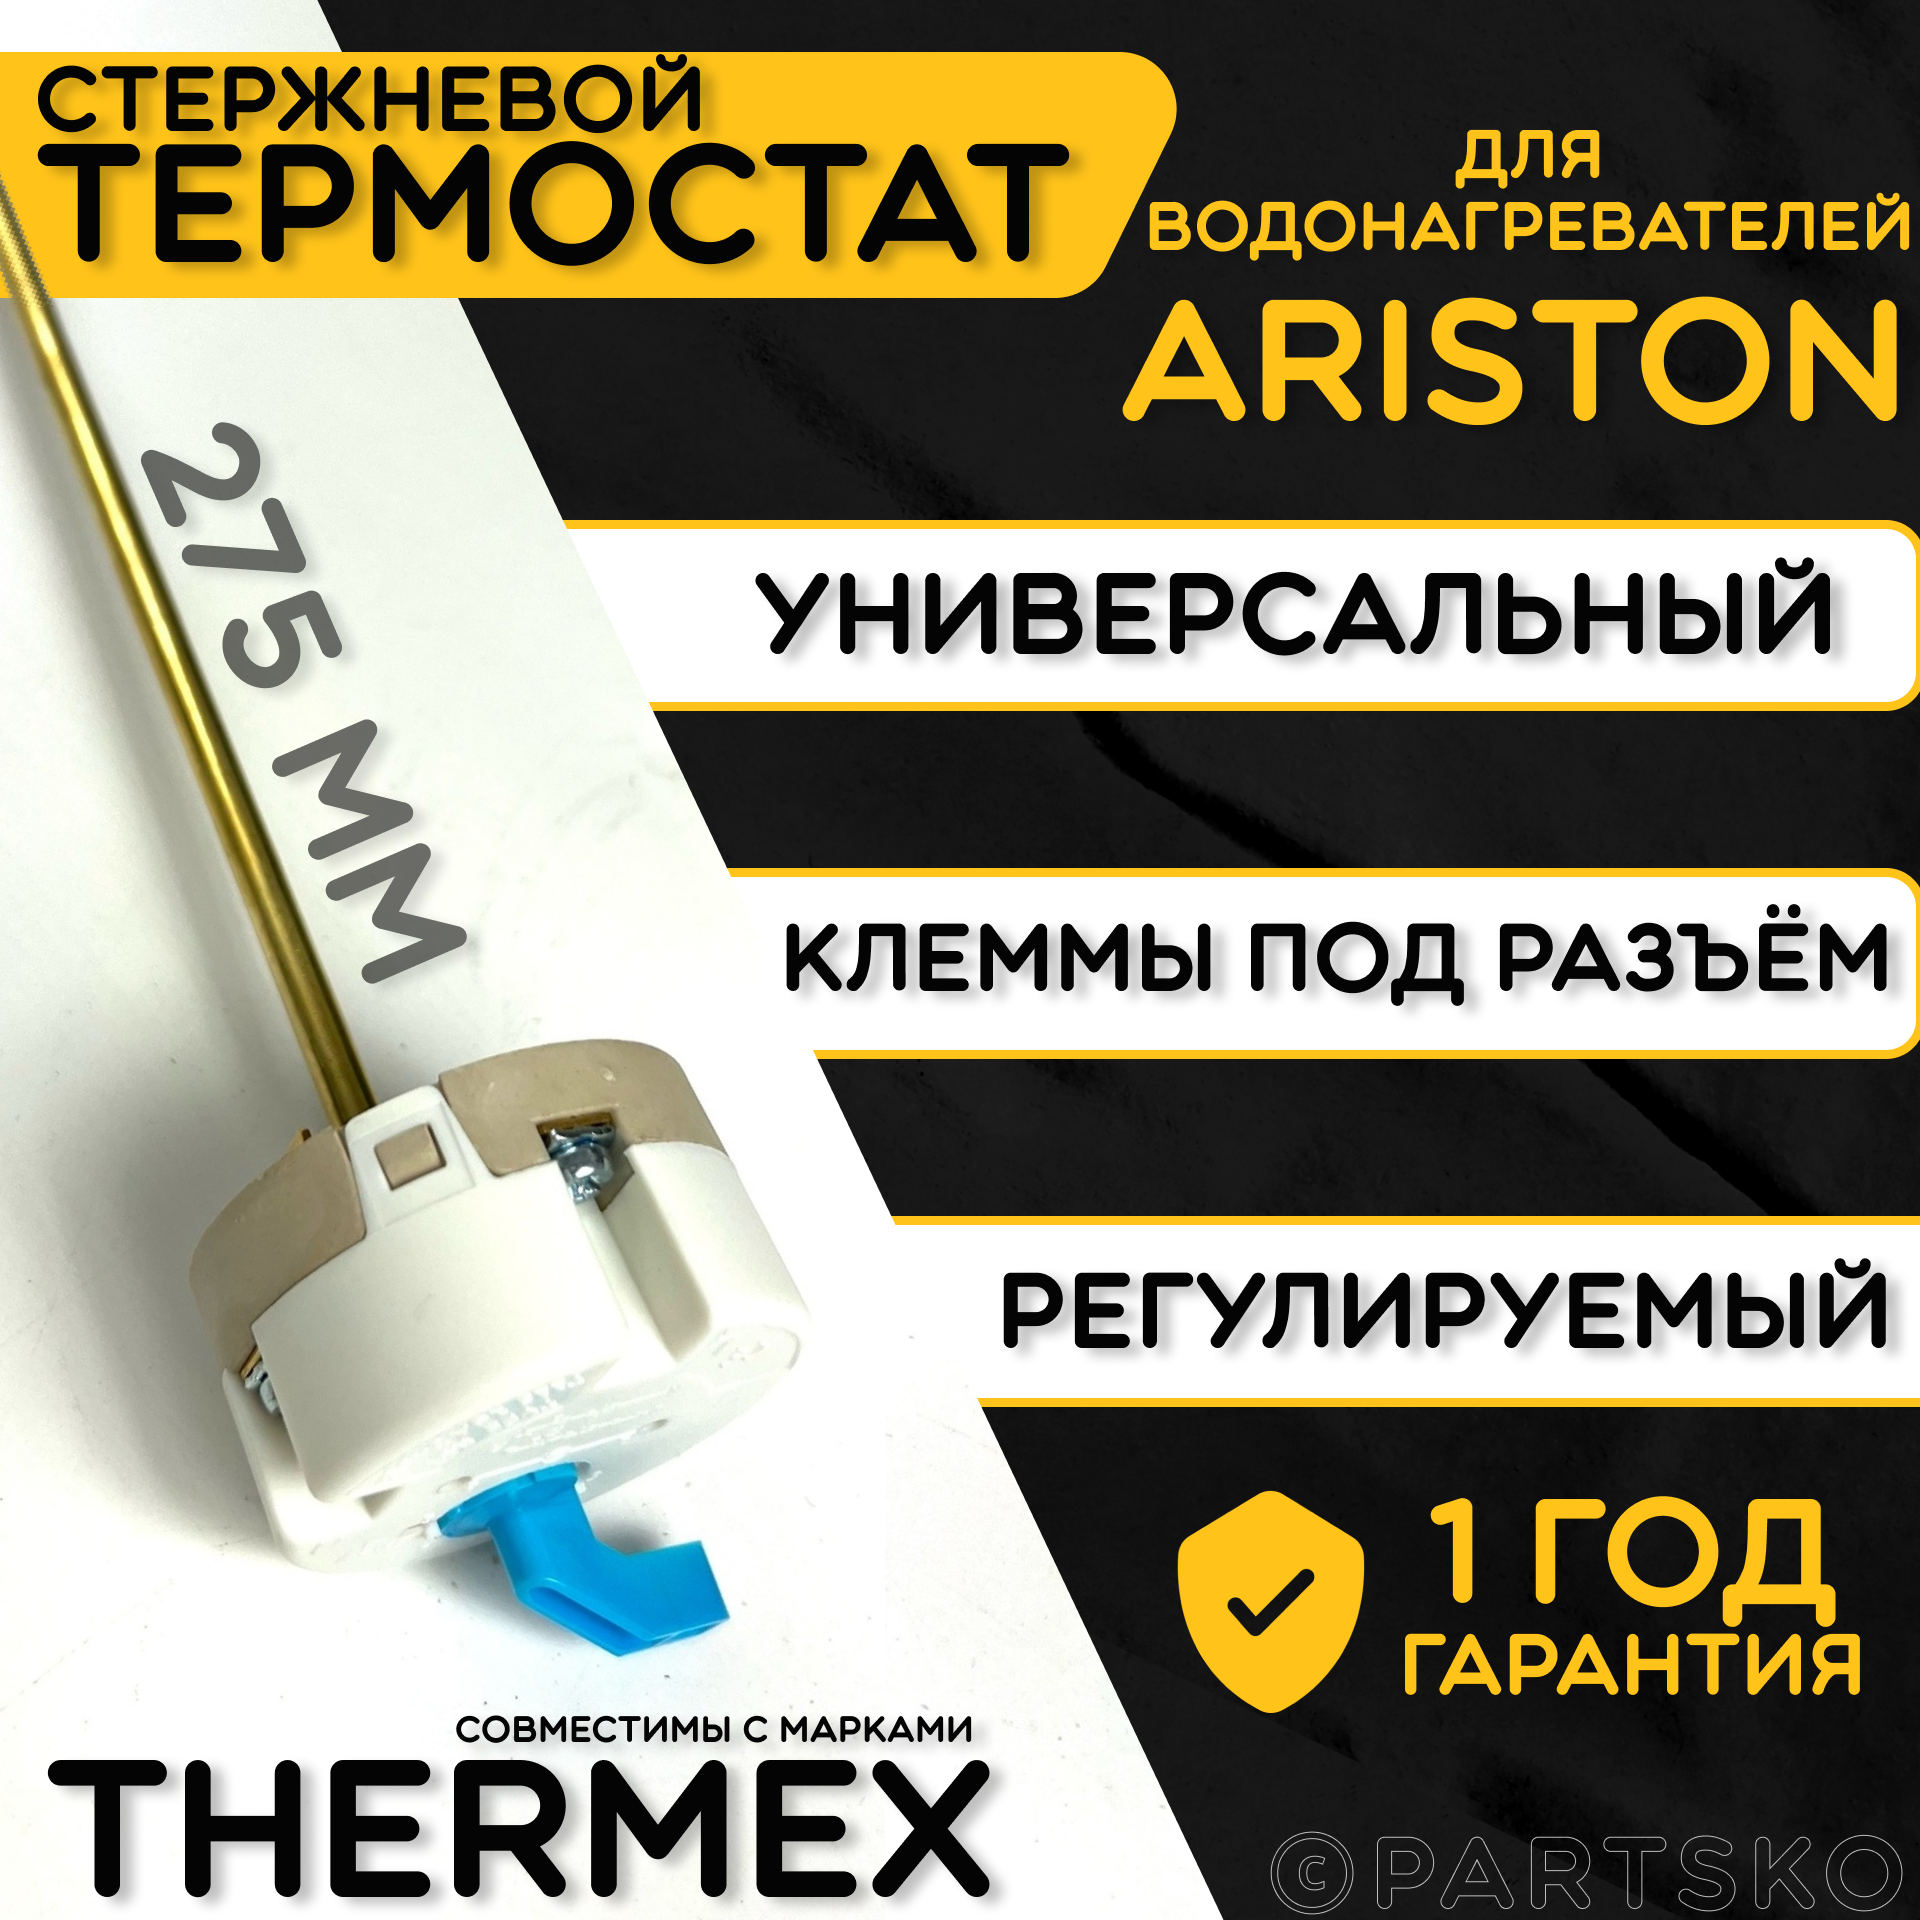 Термостат для водонагревателя Thermex. RST 16A, 25-70C, 275 мм. Стержневой датчик для трубчатых водонагревателей с регулятором температур Термекс. - фотография № 1